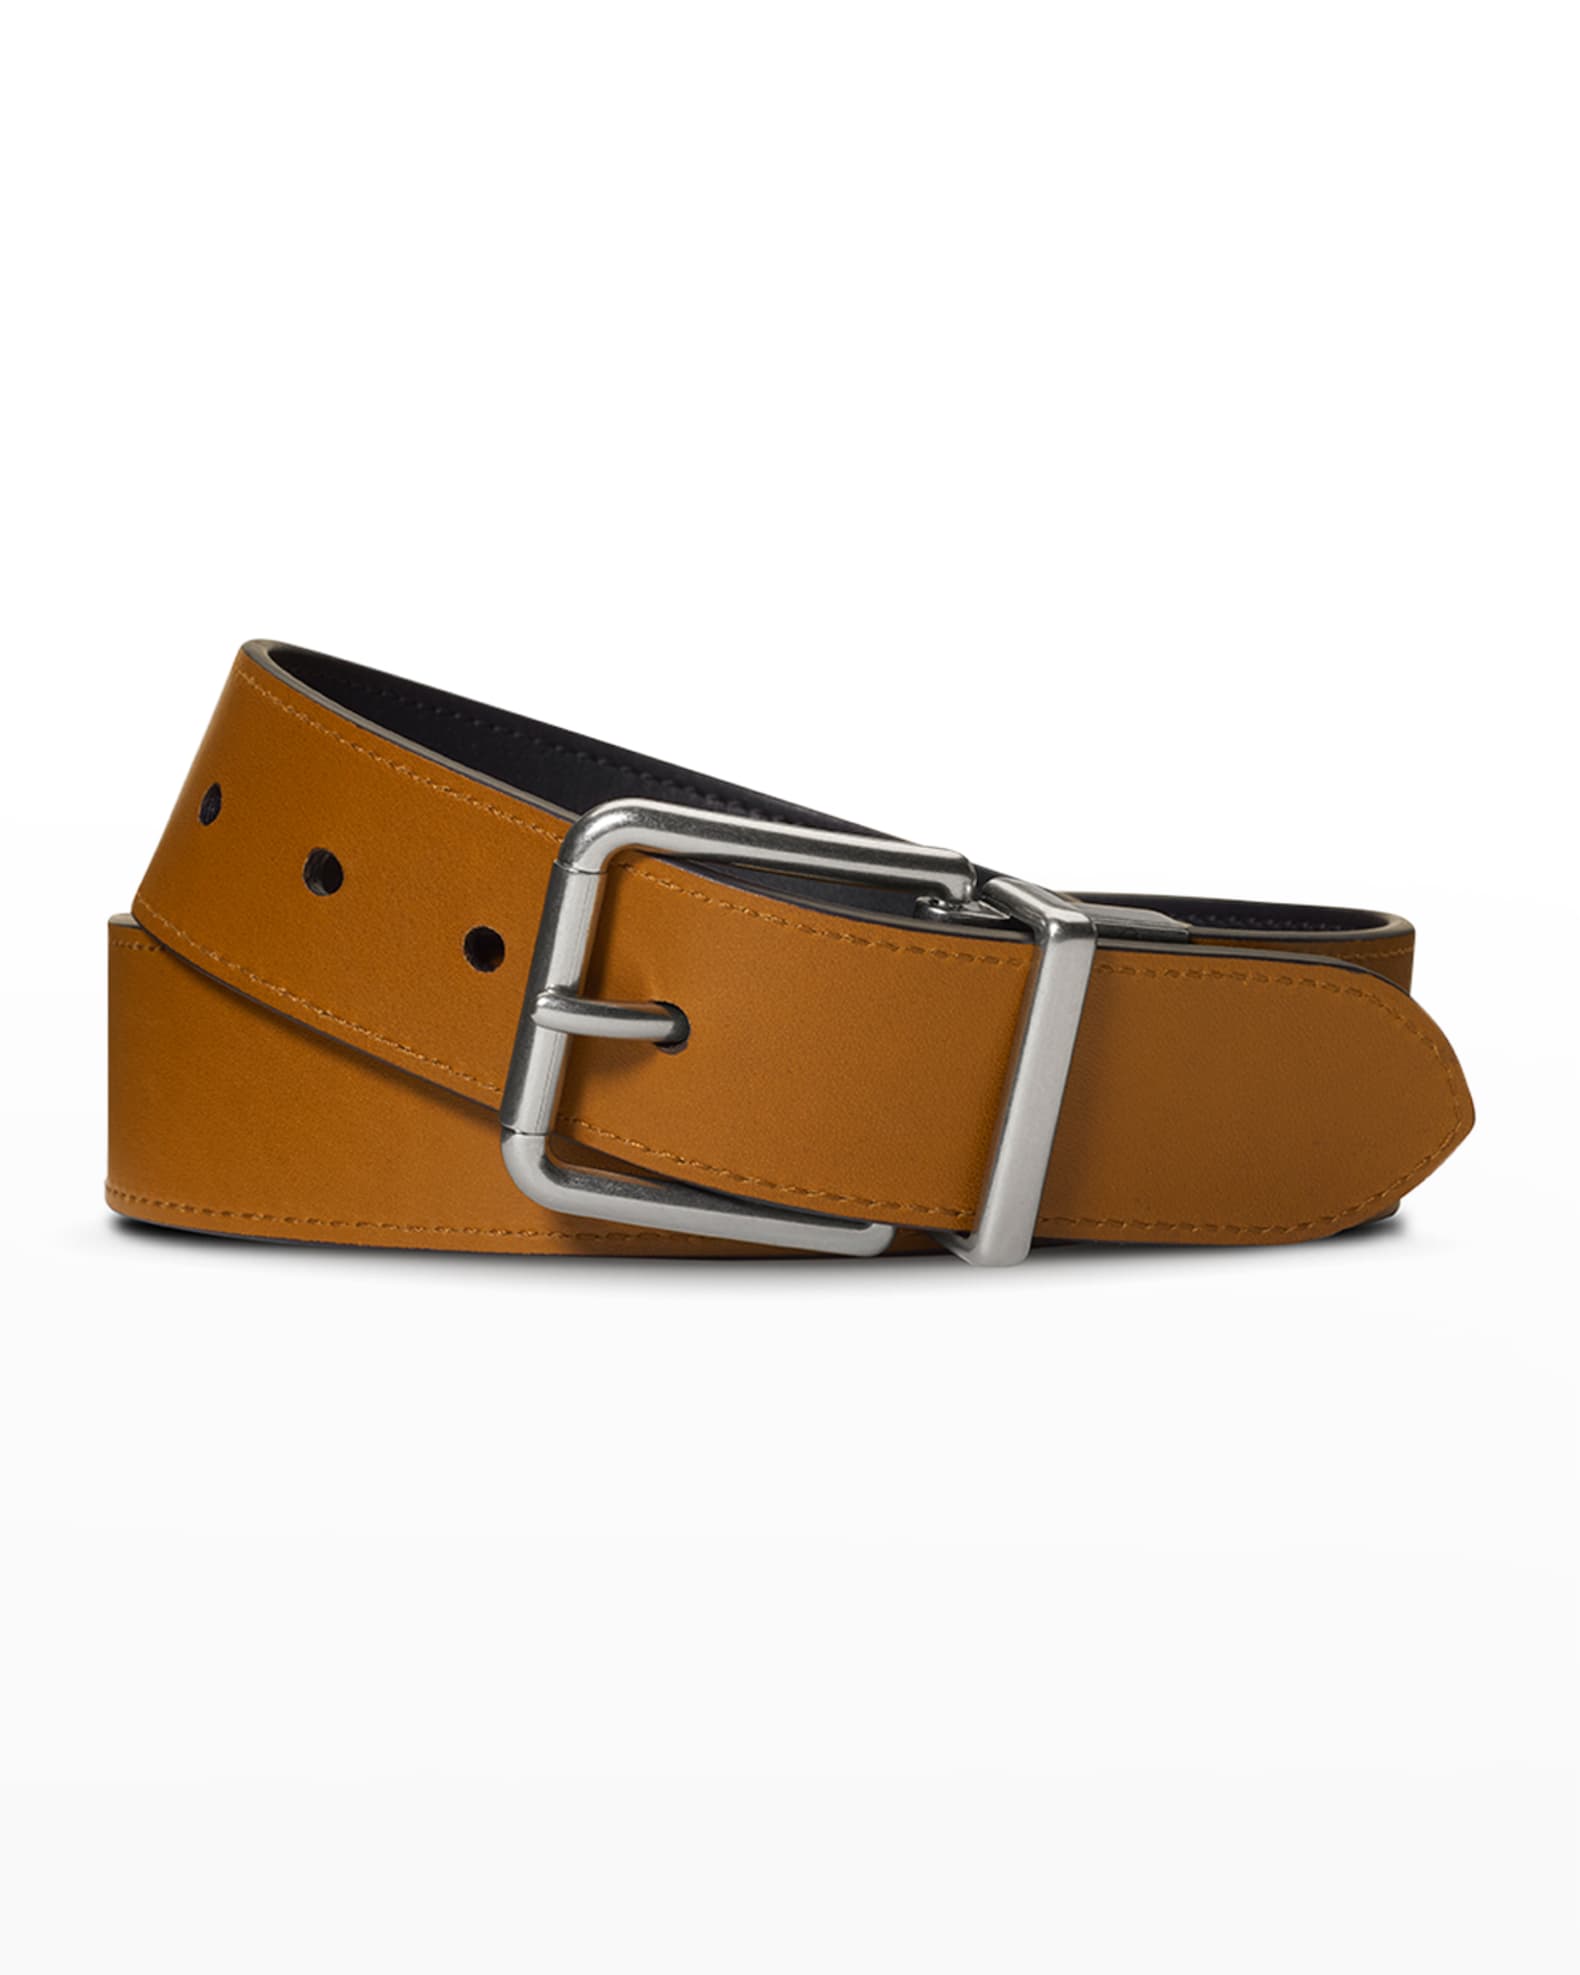 Neiman Marcus Brown Belts for Men